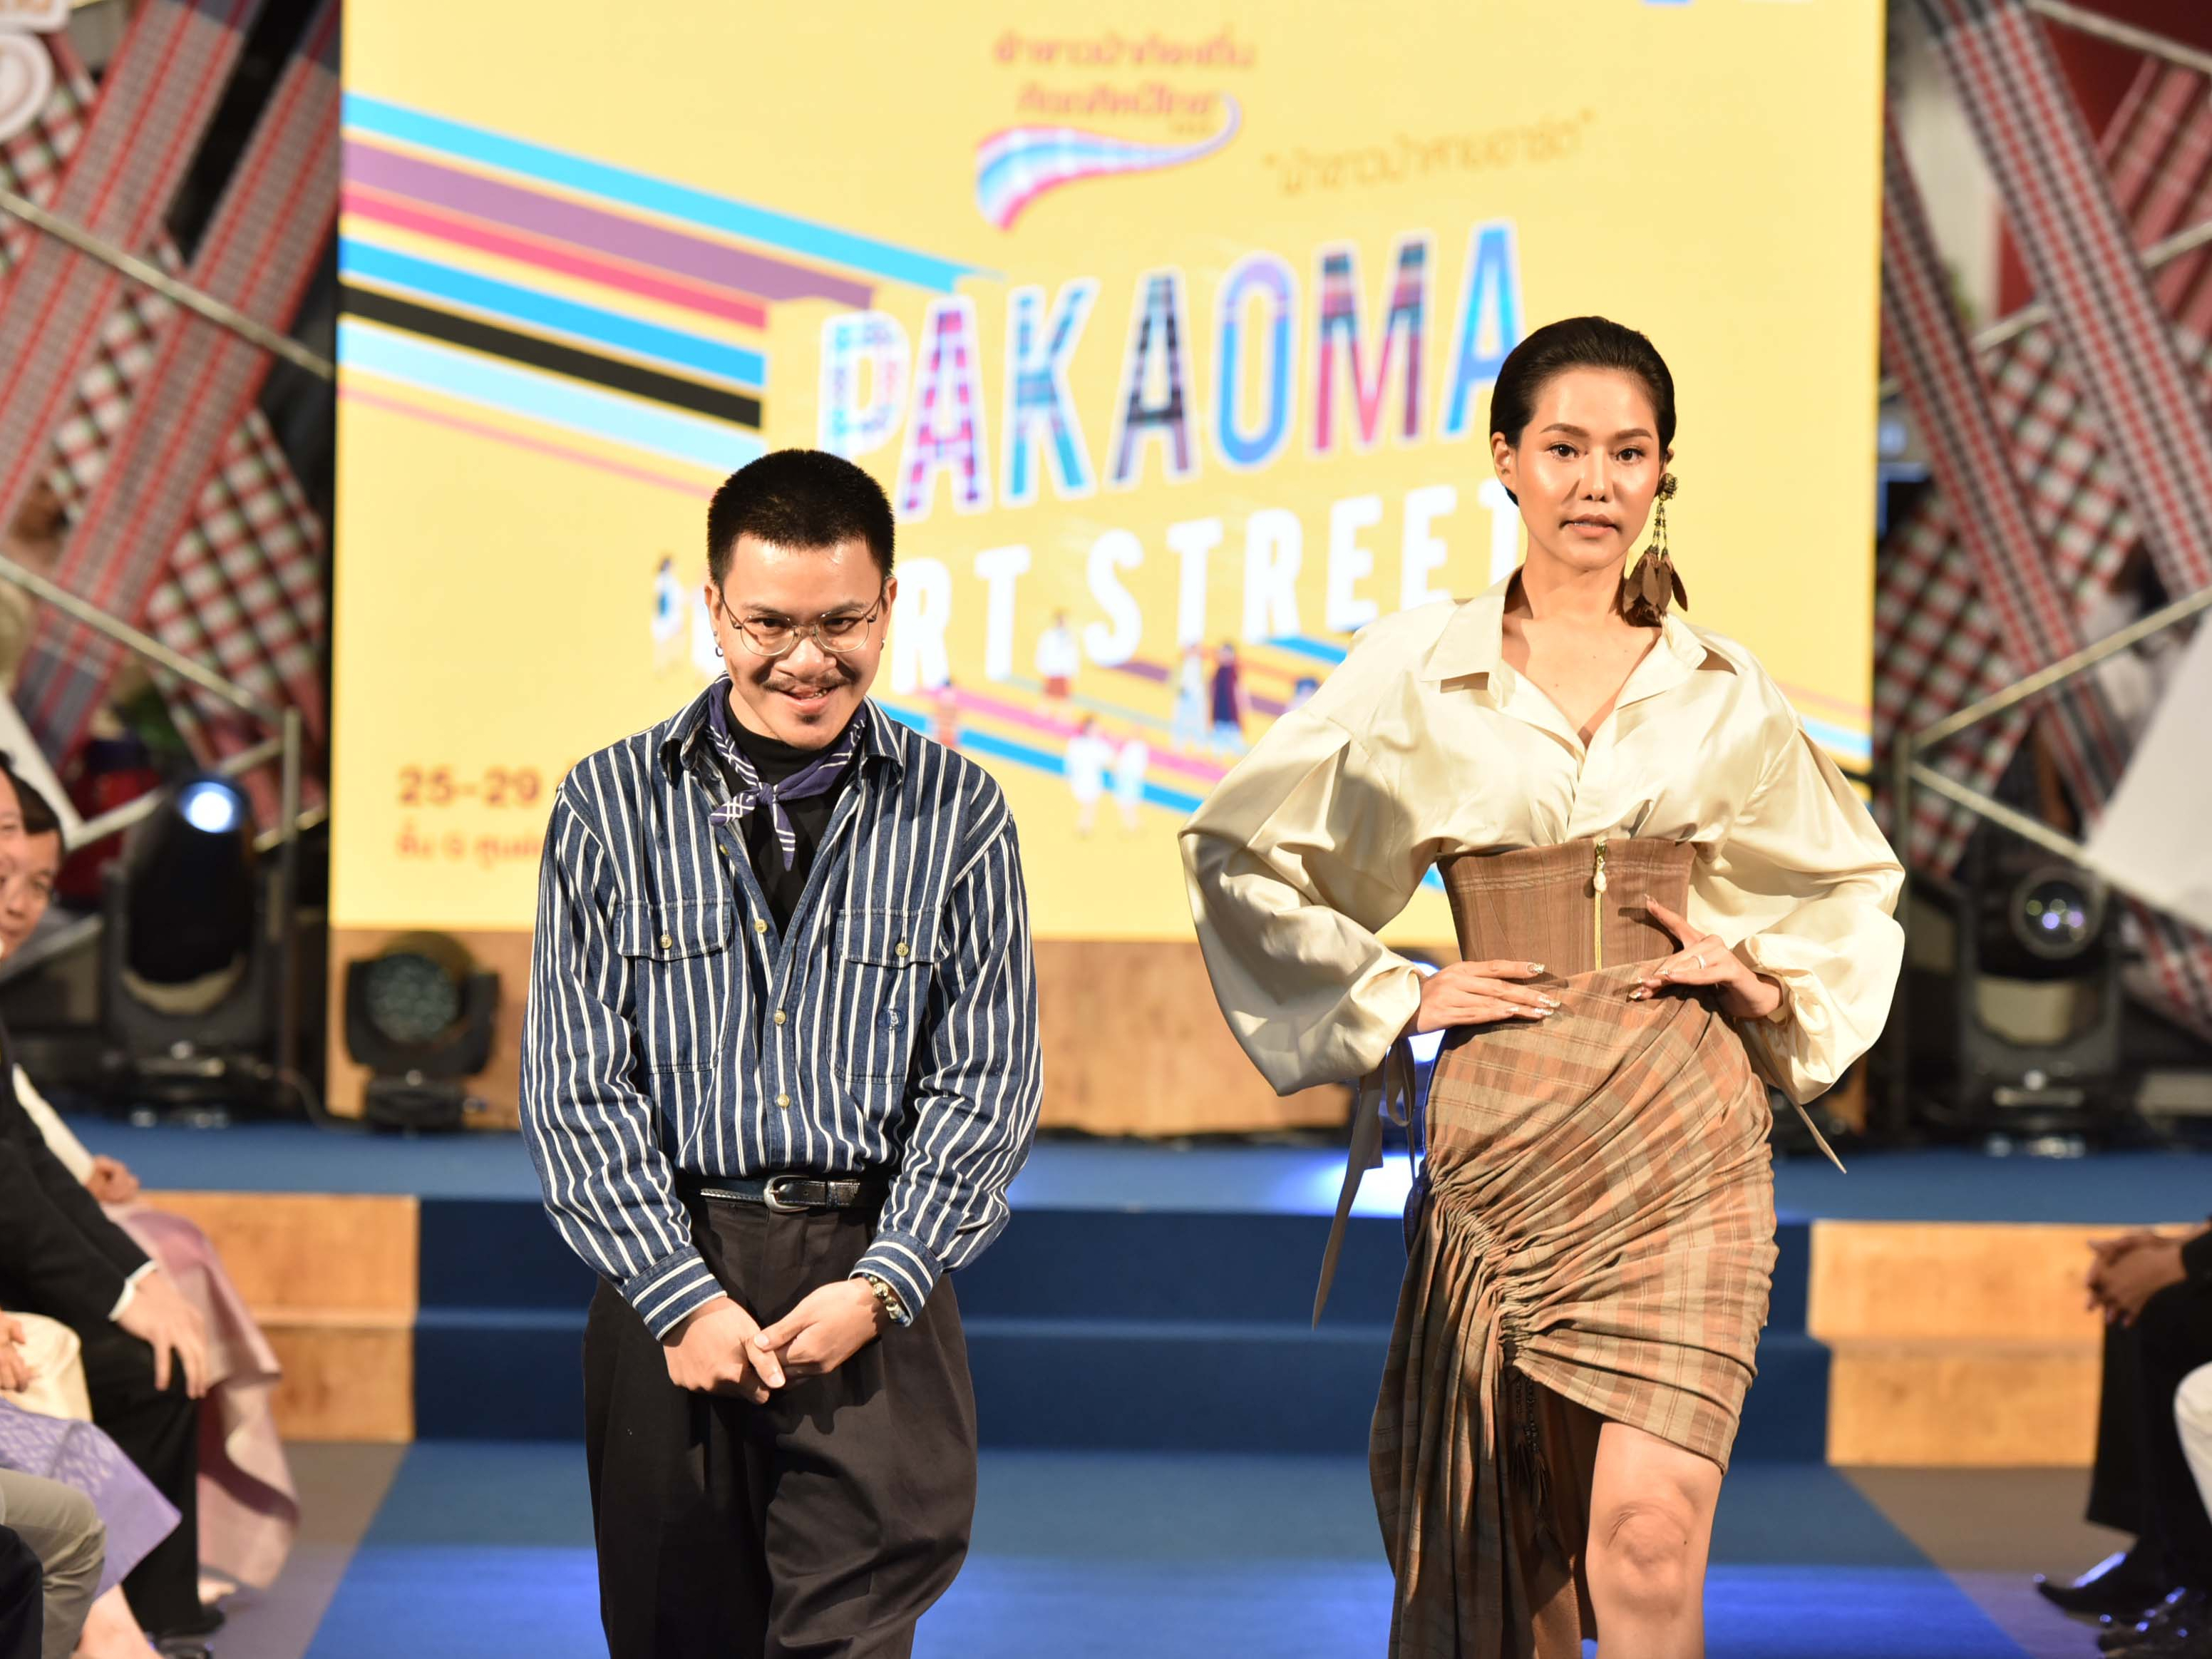 ภาพบรรยากาศภายในงาน พิธีมอบรางวัลการประกวด  โครงการผ้าขาวม้าท้องถิ่นหัตถศิลป์ไทย ประจำปี 2562